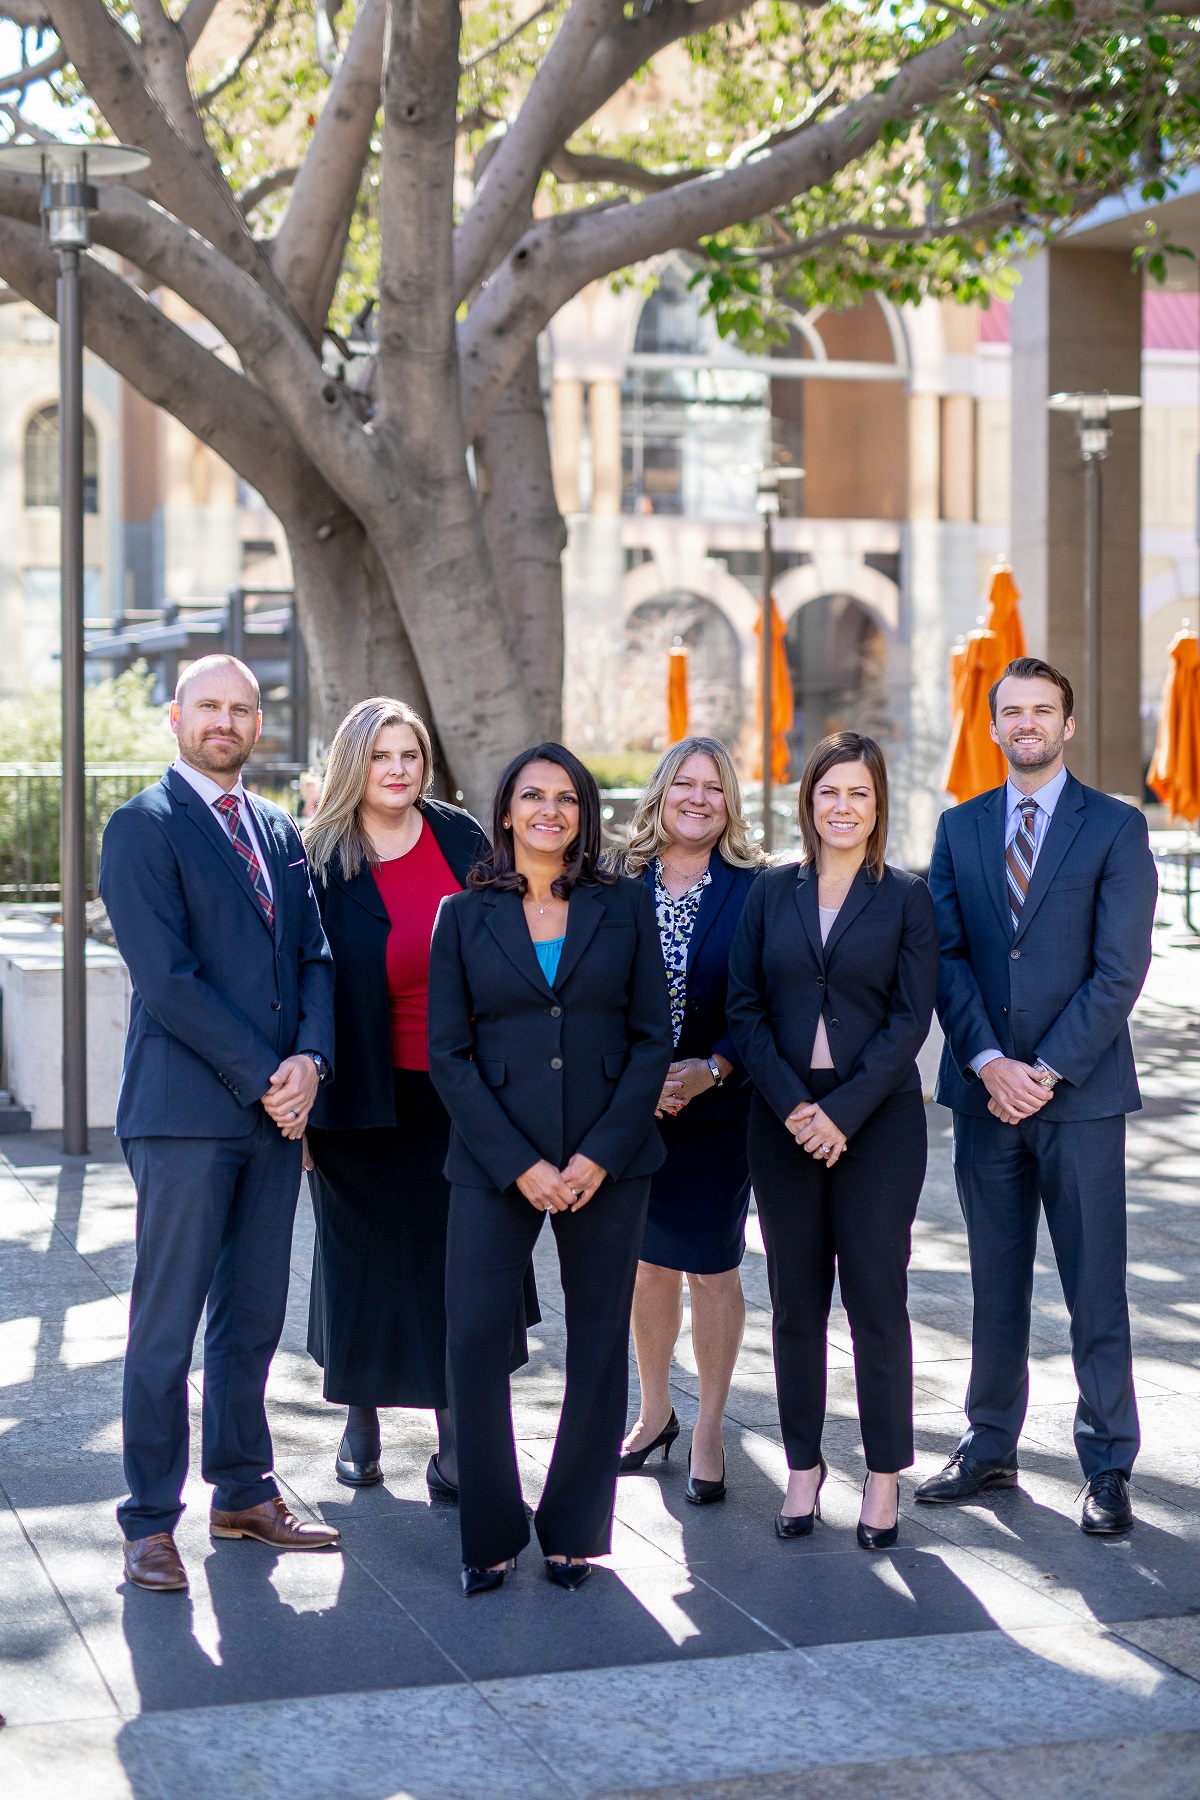 Meet the San Diego legal team of Haeggquist & Eck, LLP.